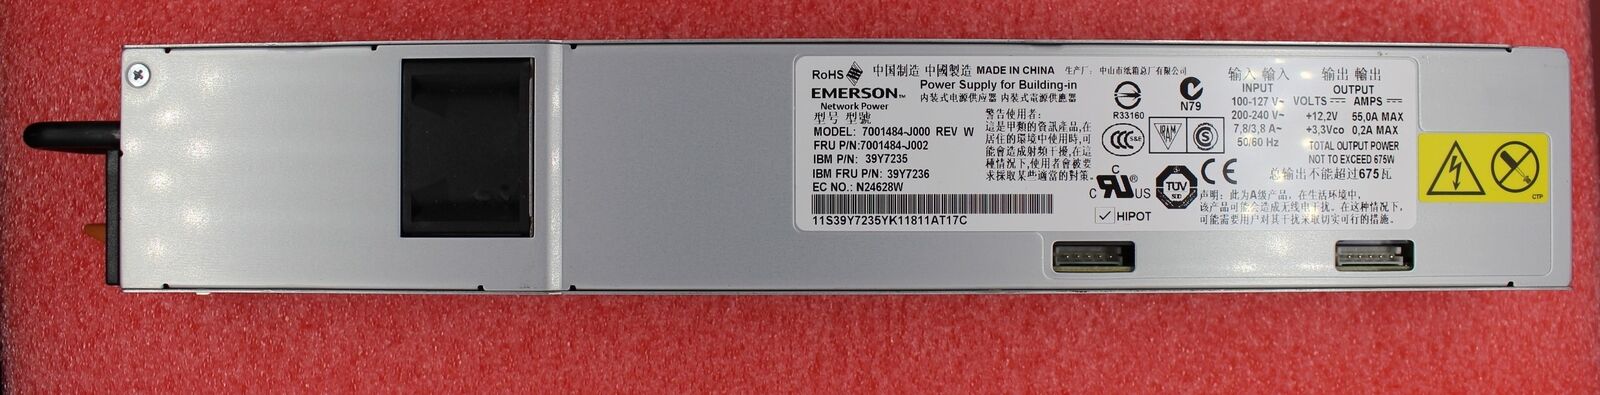 39Y7236 - IBM X3550 675W Power Supply